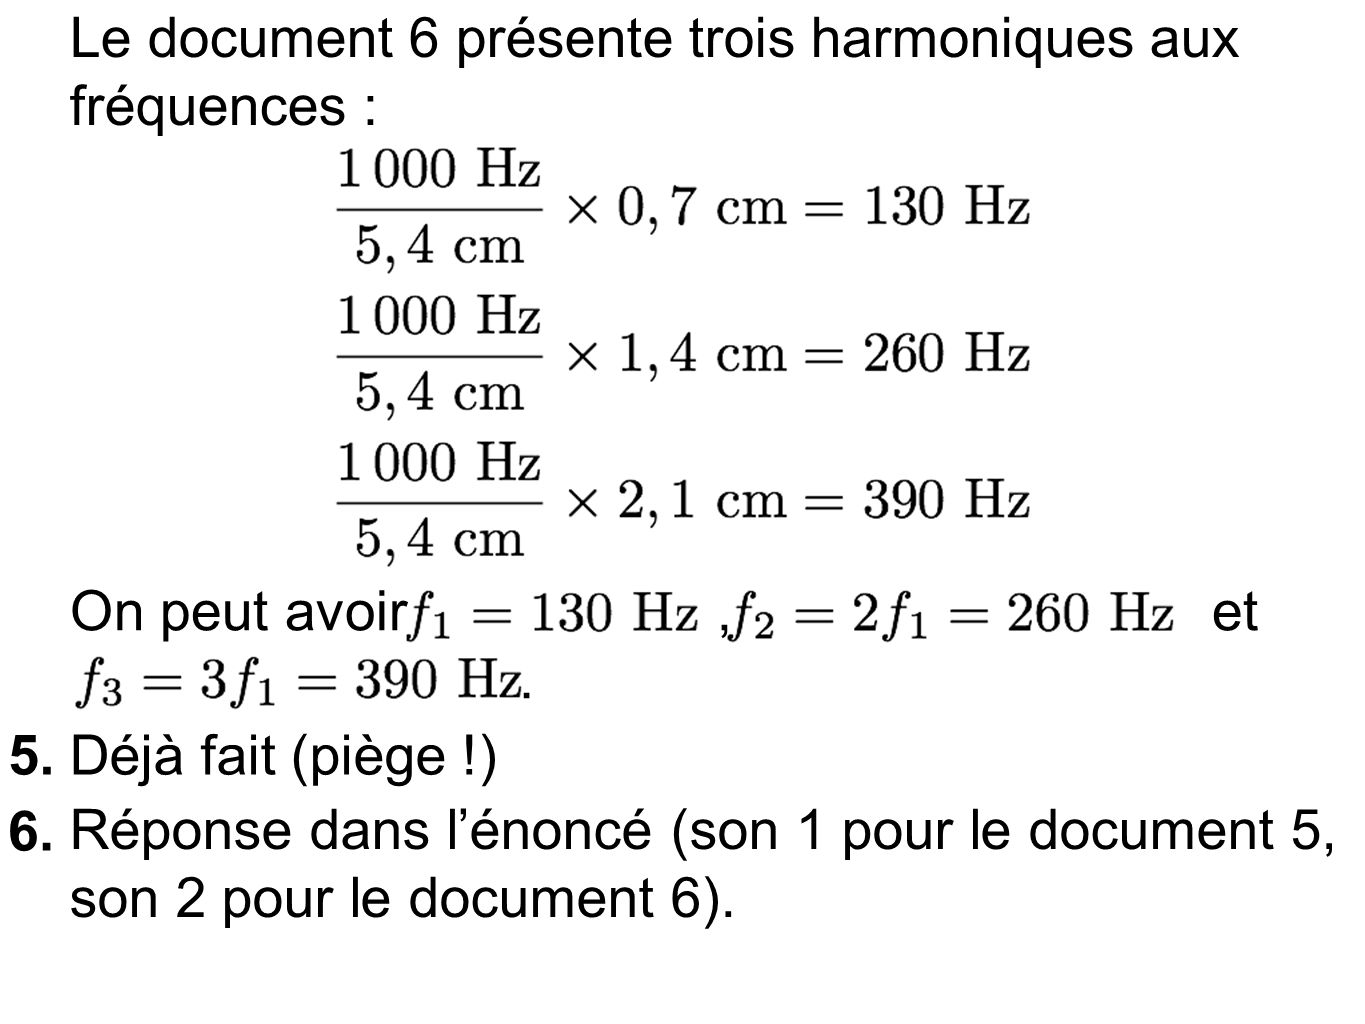 Le document 6 présente trois harmoniques aux fréquences :